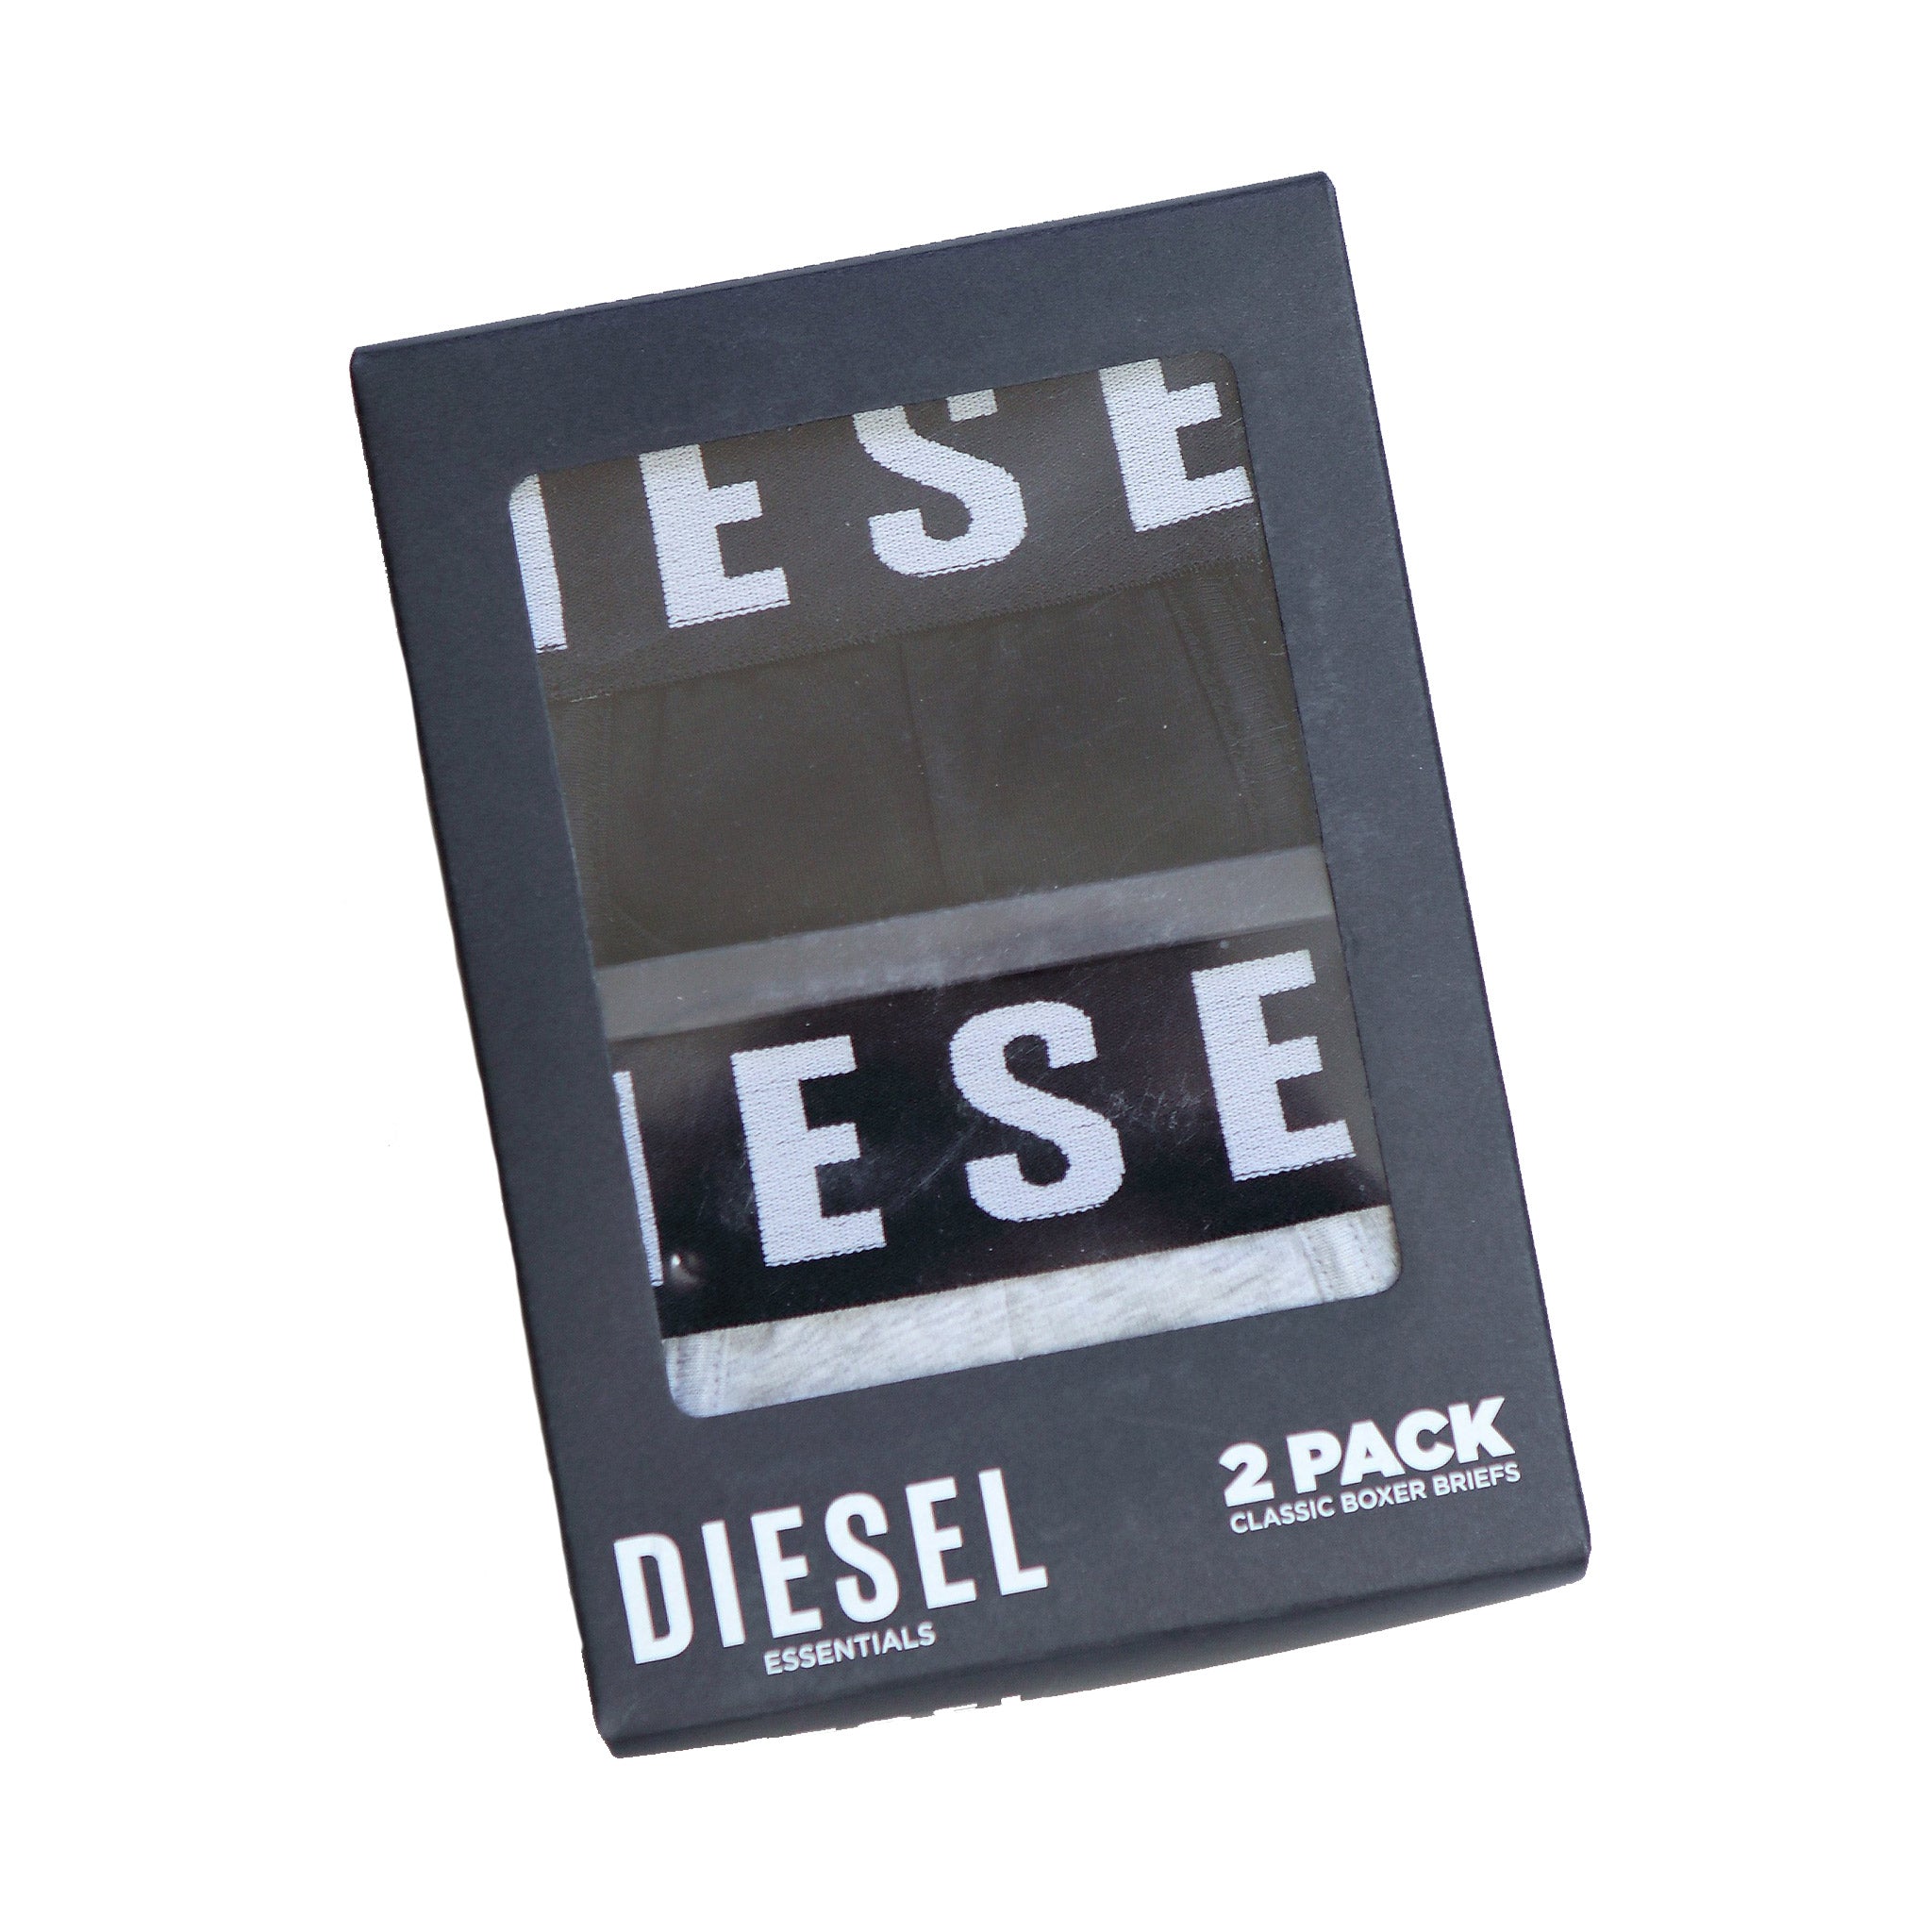 Diesel Boxed Boxers - Black/Pebble